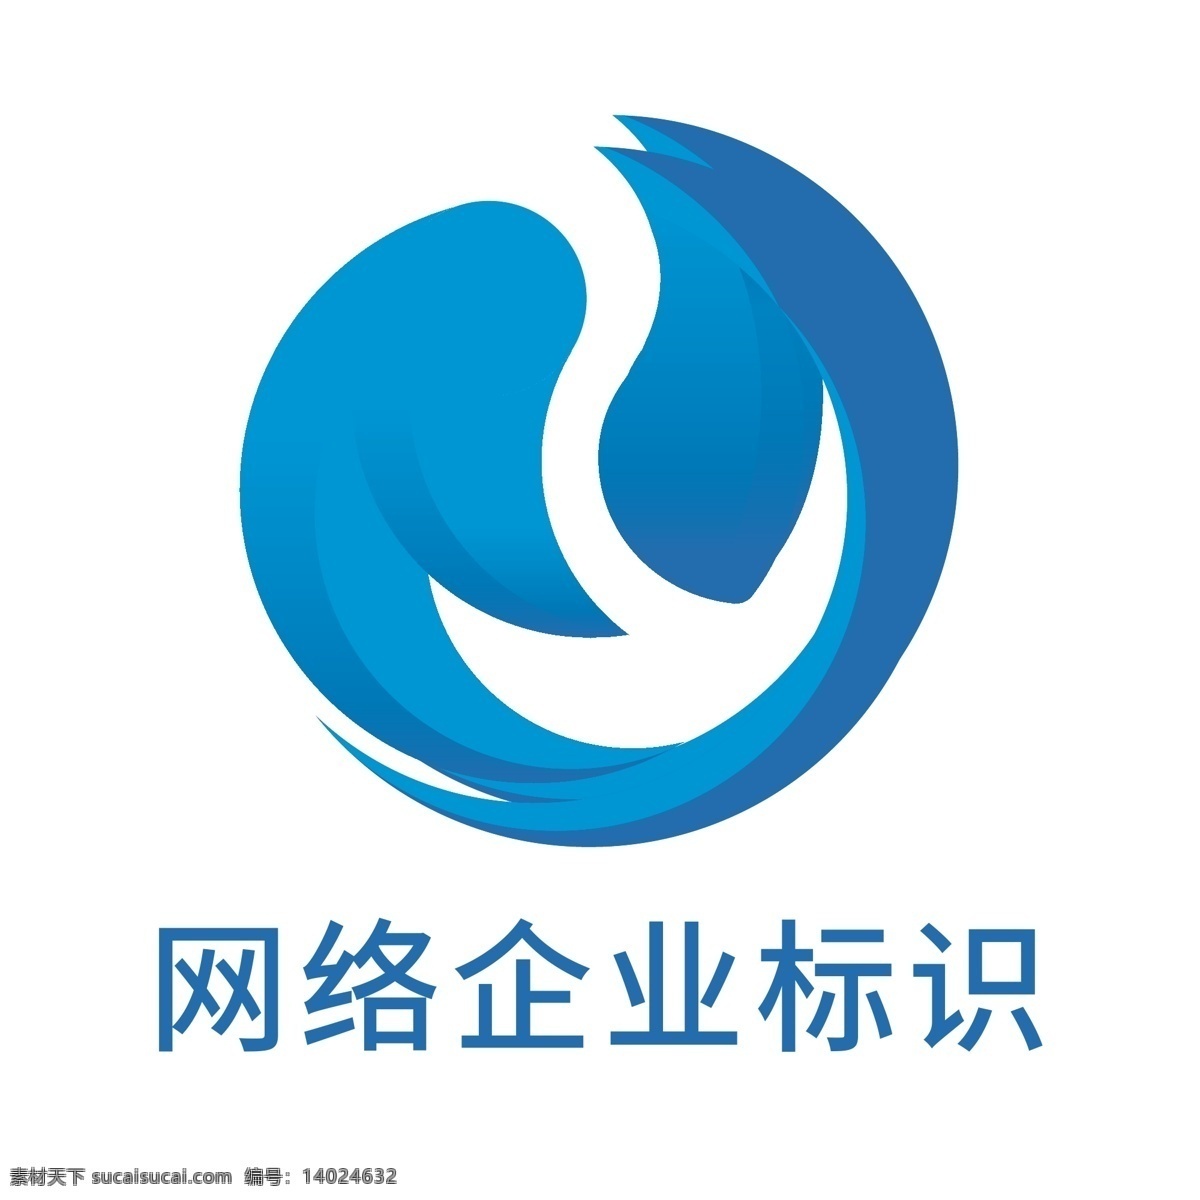 网络 科技 企业 标识设计 互联网 logo 企业logo 企业标识 网络logo 标识 logo设计